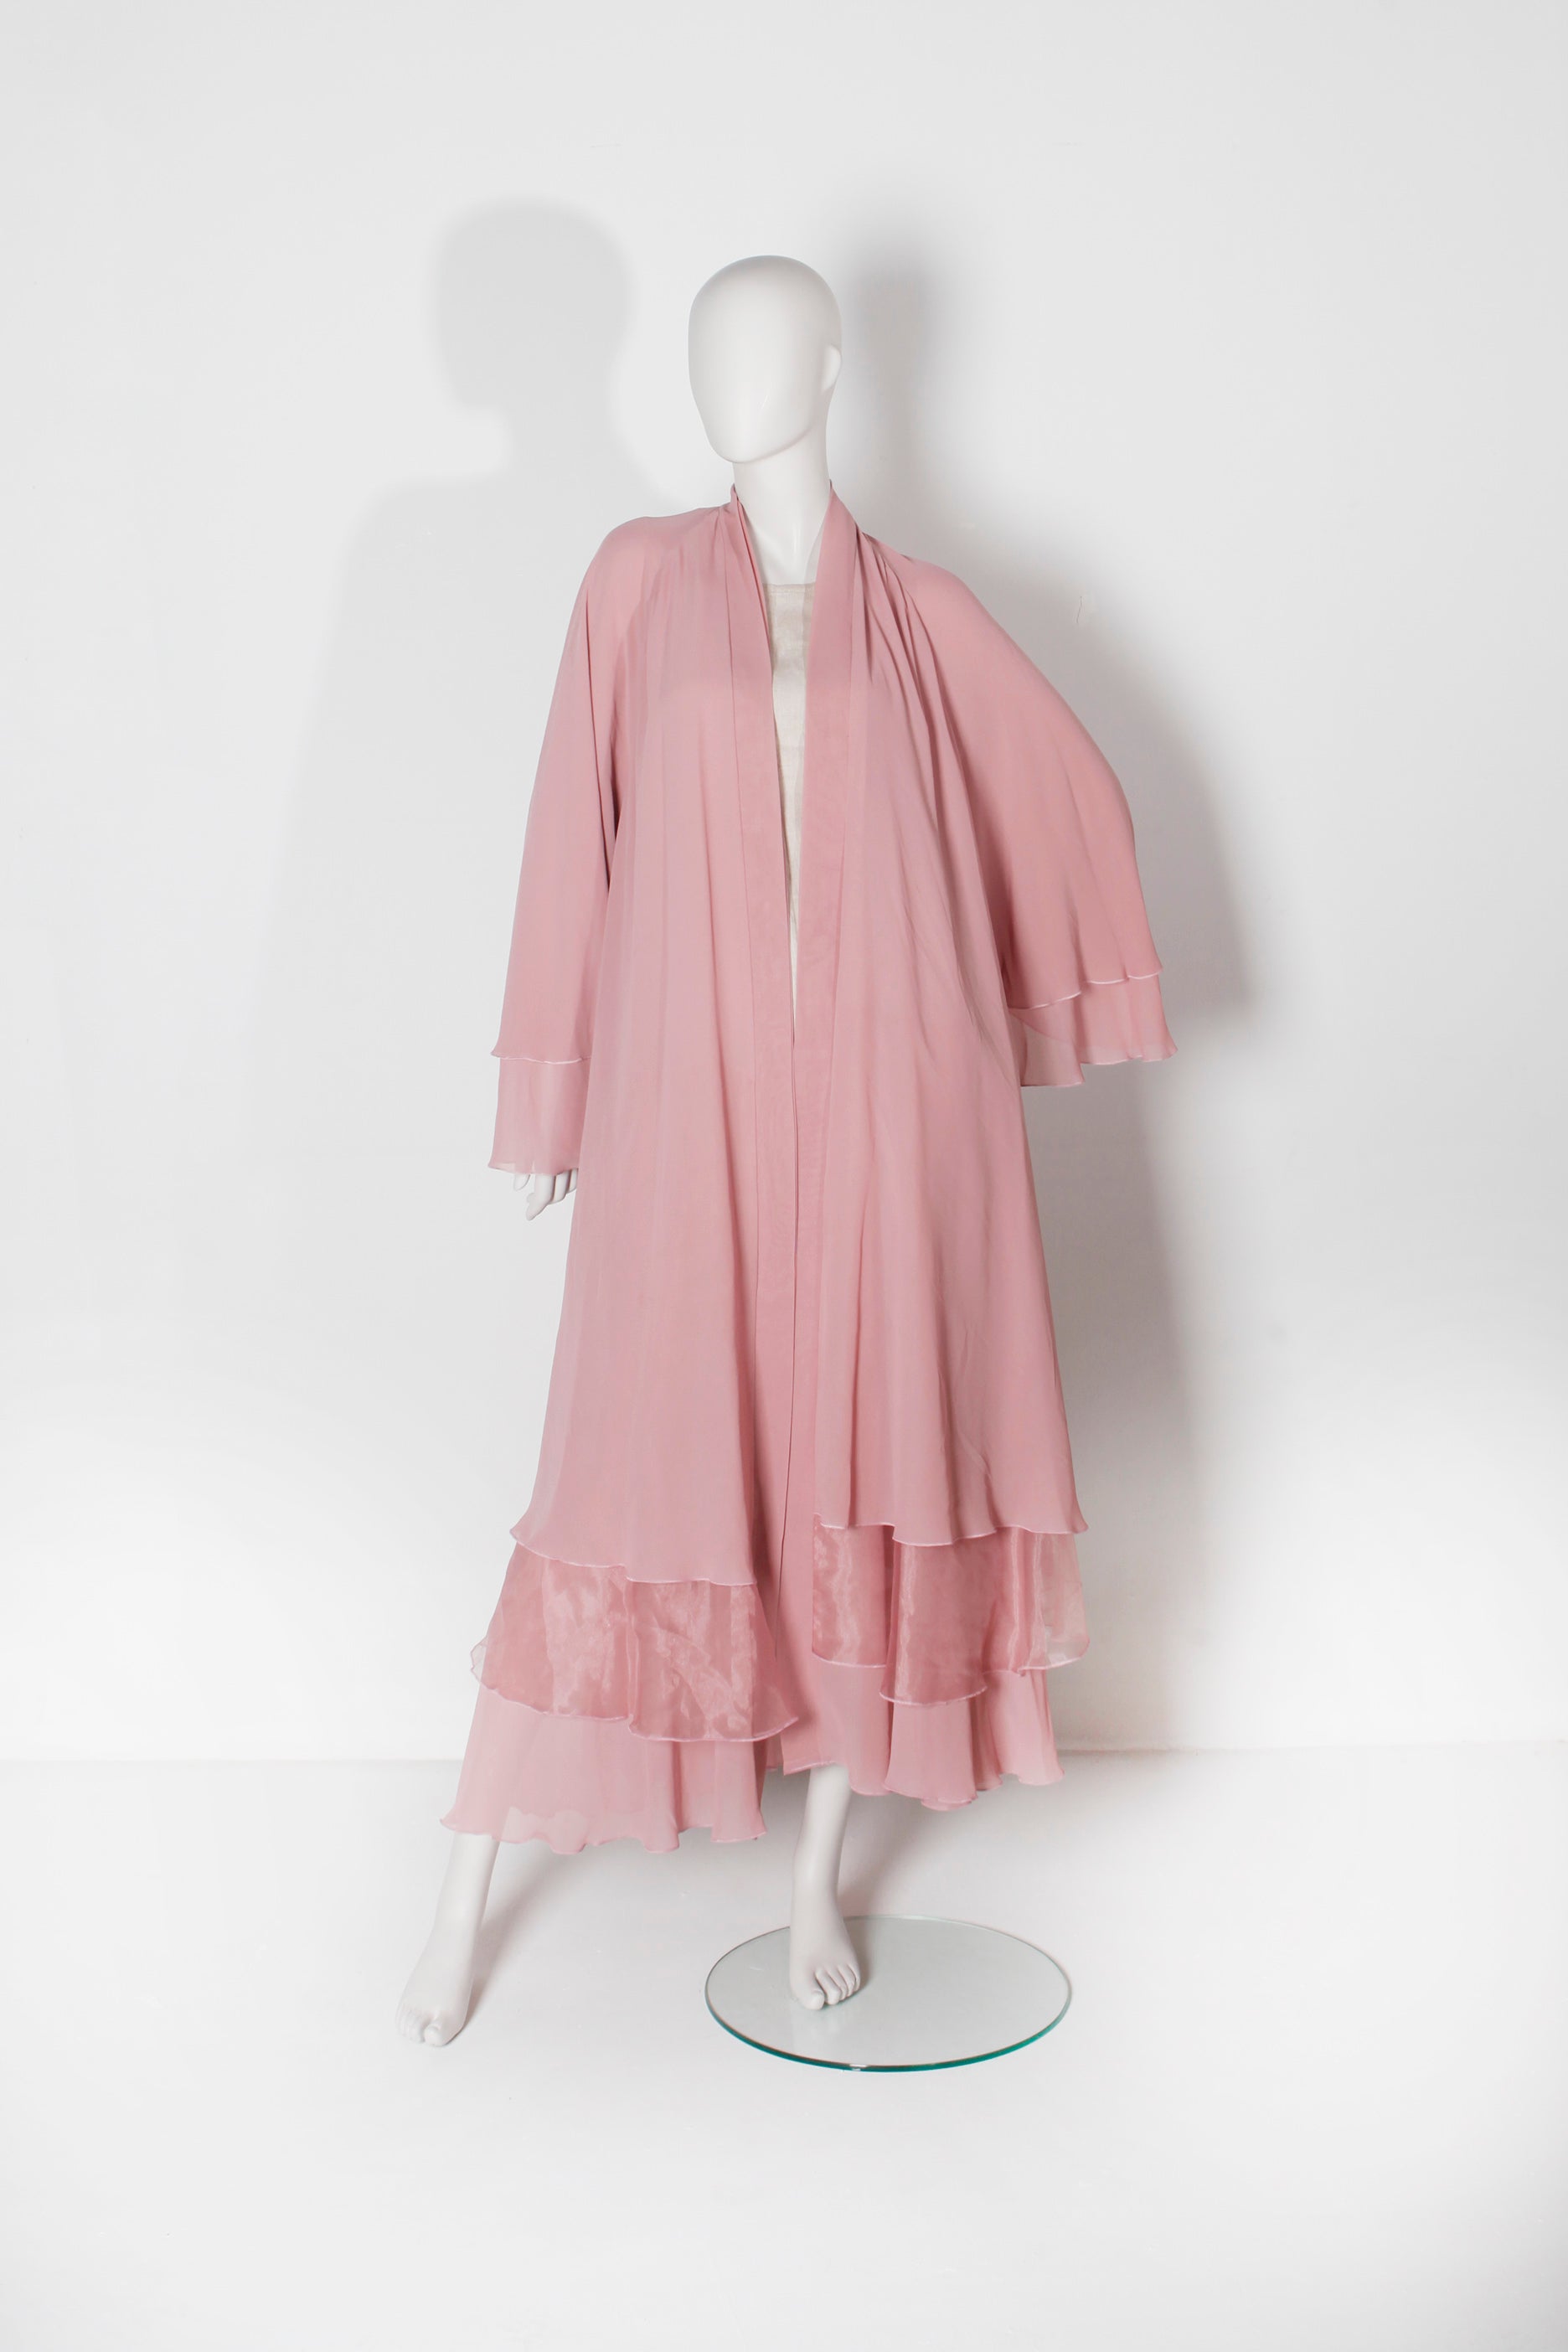 Layered Pink Abaya